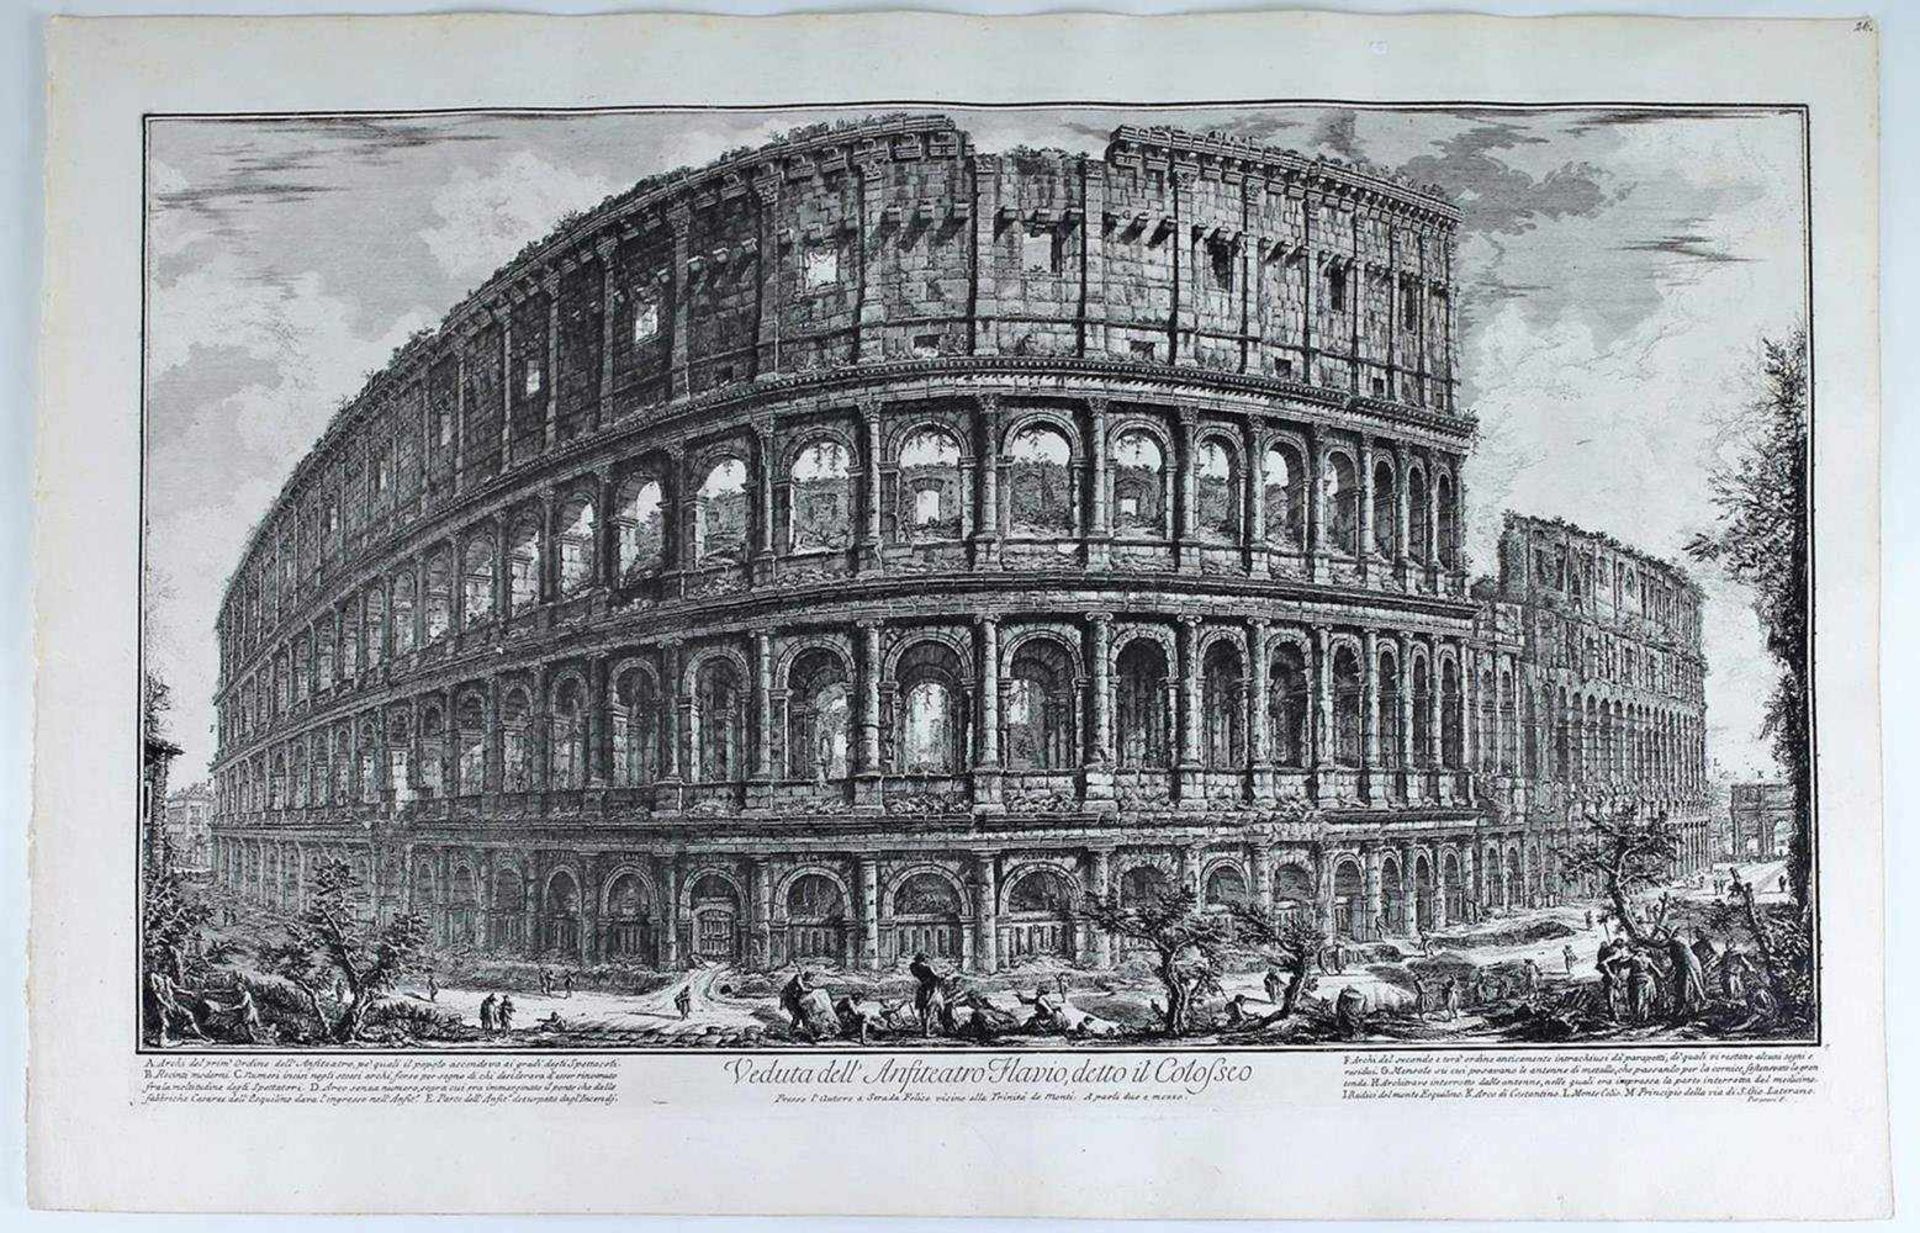 Piranesi, Veduta dell Anfitiatro Flavio, detto il Coloseo, Roma. Mid XVIII century. Engraving on